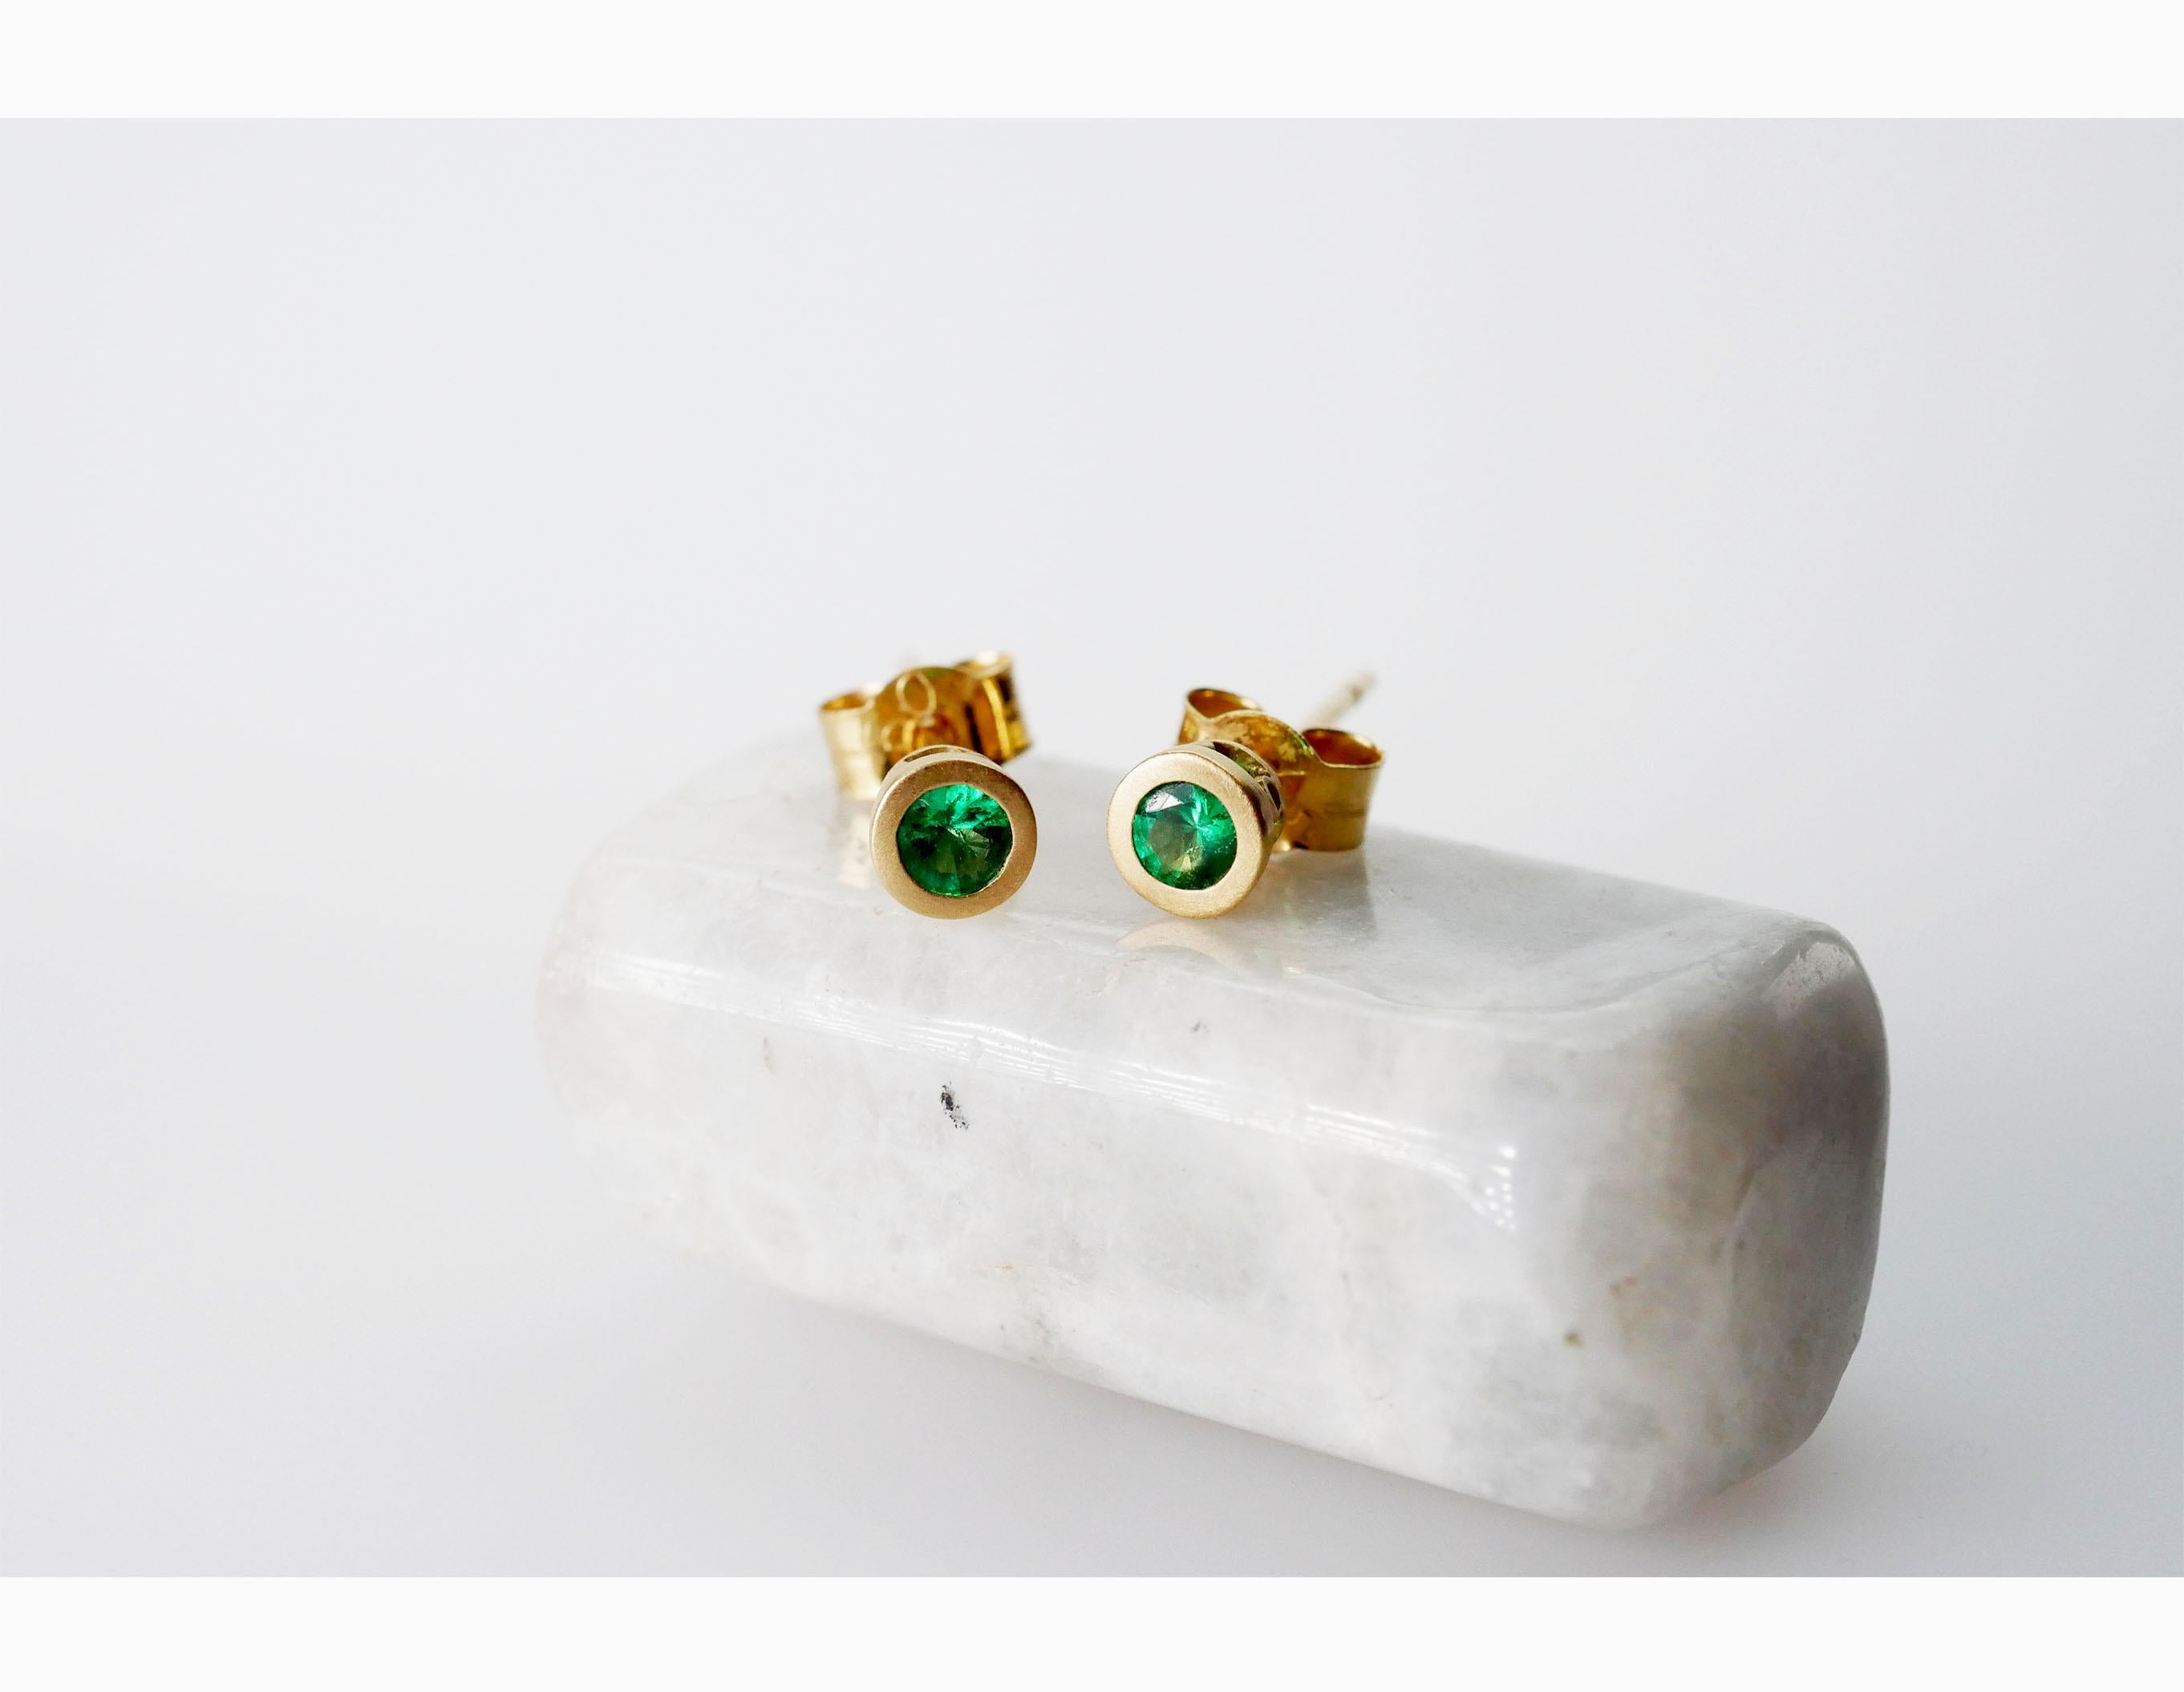 Zarte, hellgrüne, runde Smaragd-Ohrstecker aus 18 Karat Gelbgold. Diese Ohrringe sind in einer glatten Lünettenfassung mit mattem Finish und dekorativem Muster gefasst, das das Licht durch die Smaragde scheinen lässt. Einzeln oder in Kombination mit